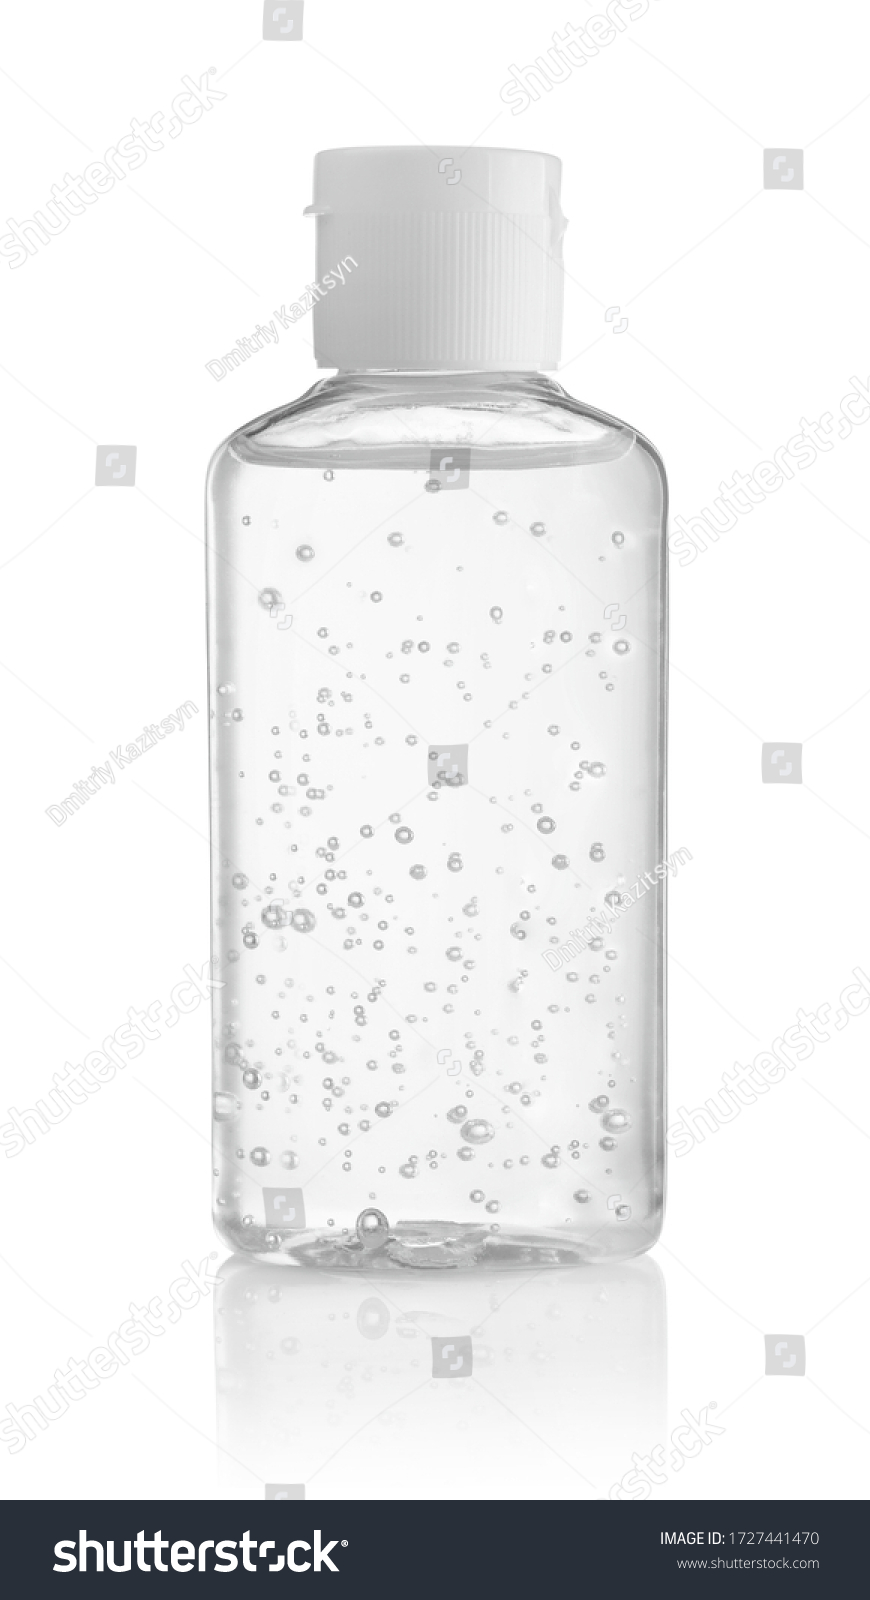 Bottle of antiseptic hand gel isolated on white background. #1727441470